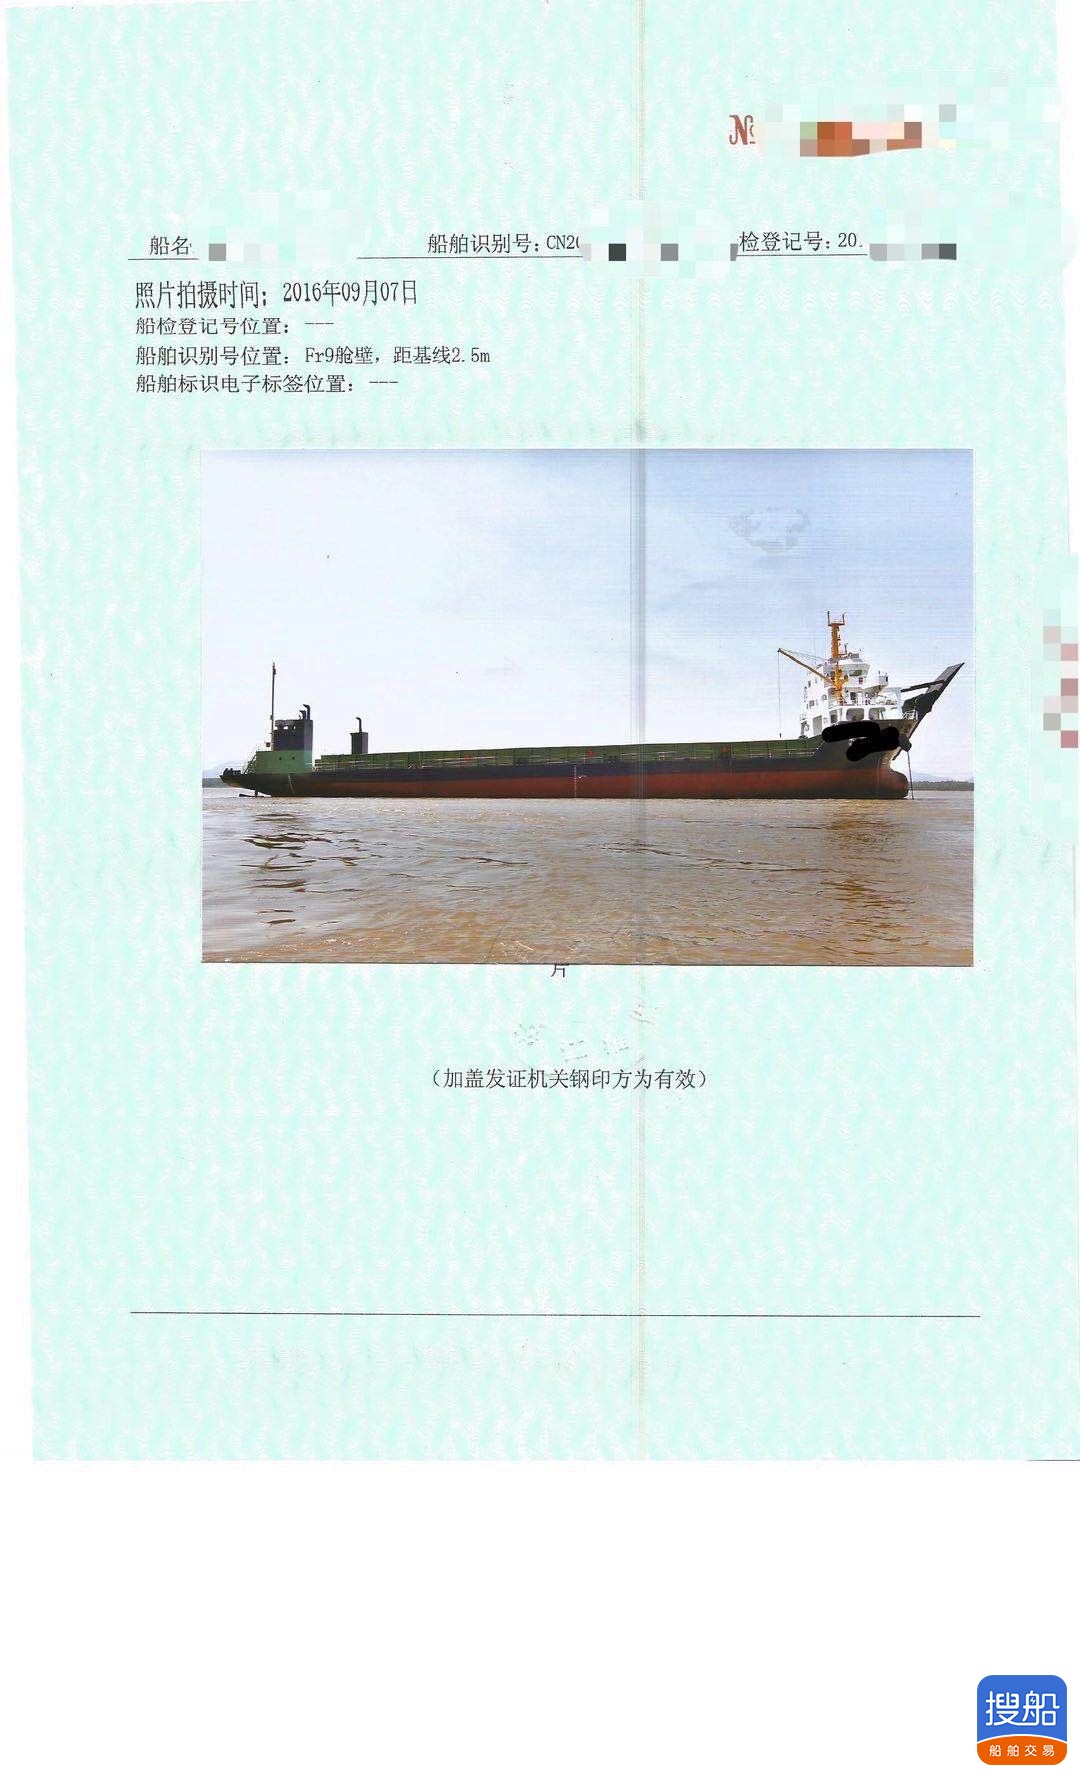 出售6000吨甲板驳船